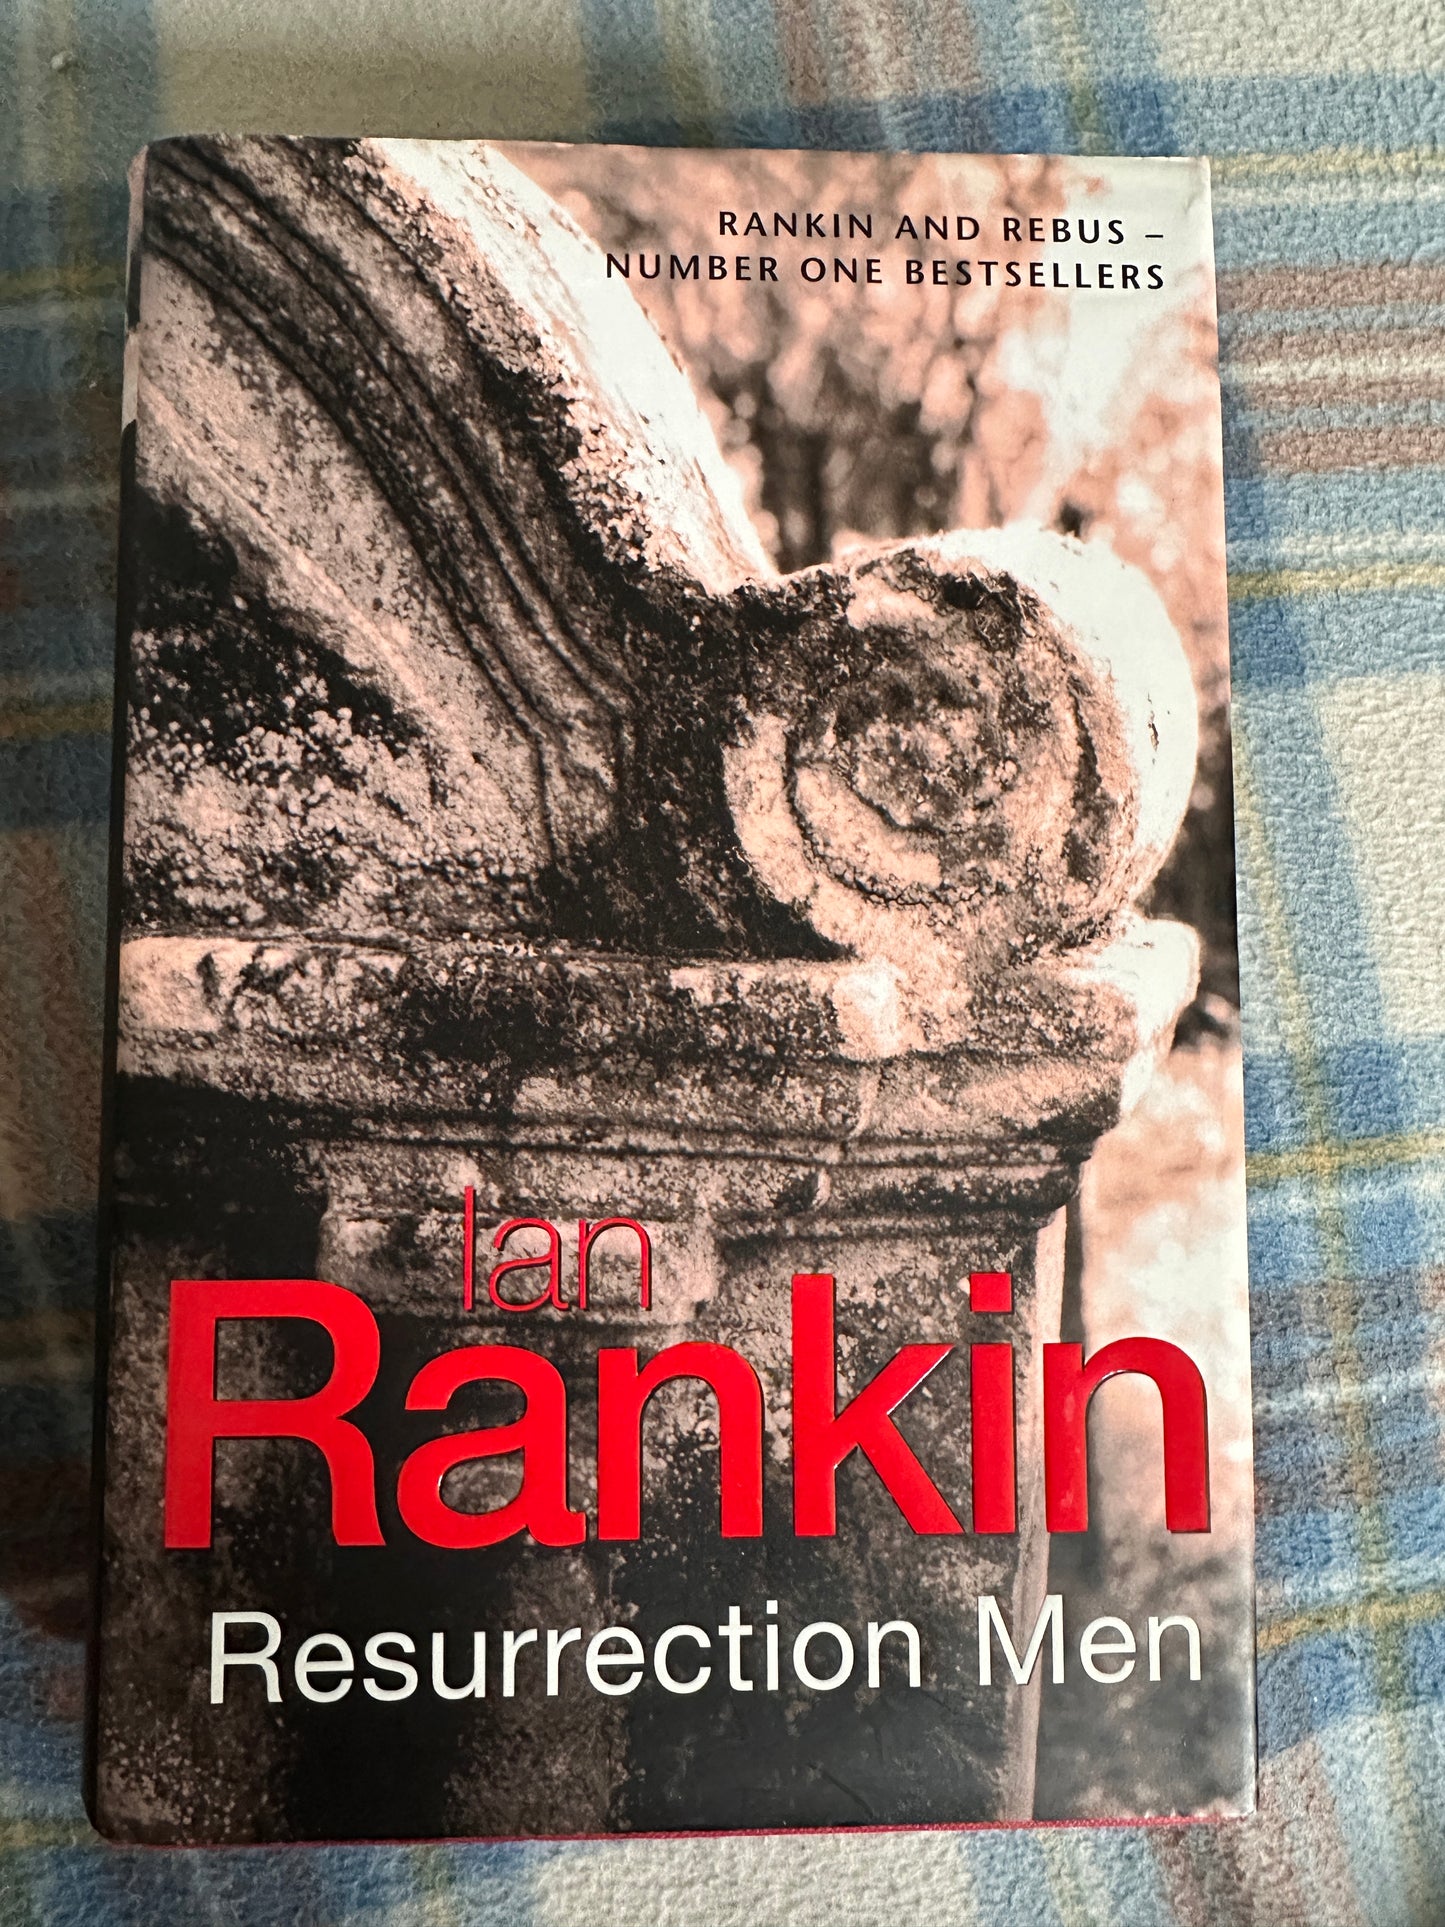 2001*1st* Resurrection Men - Ian Rankin(Orion)